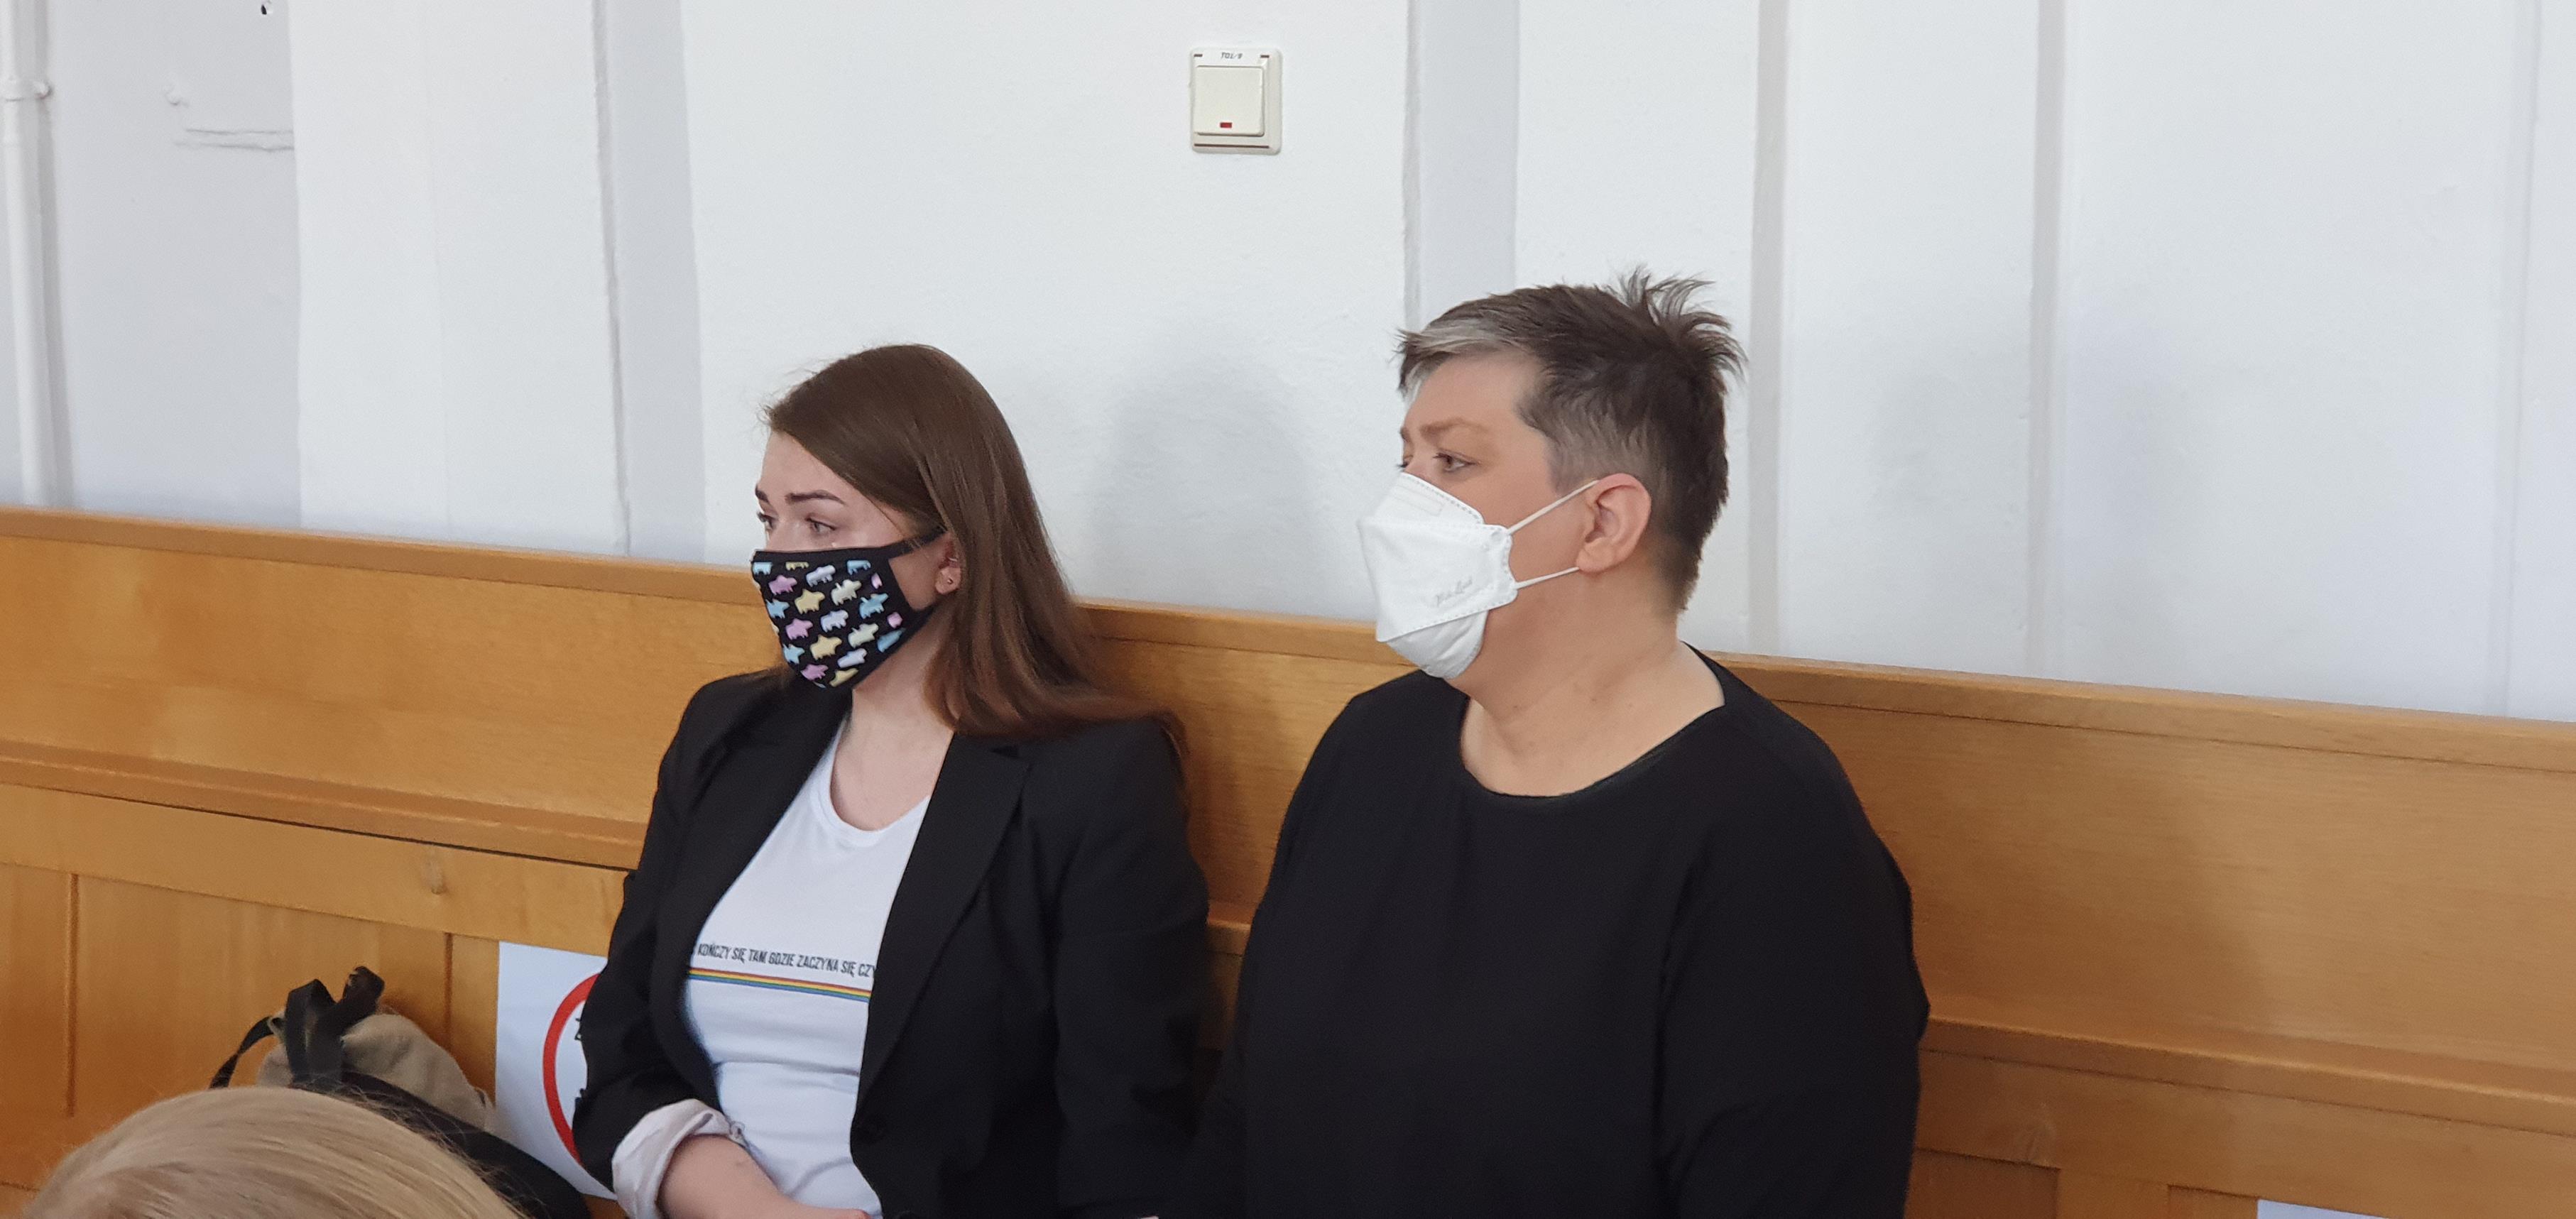 Sąd Rejonowy w Płocku uniewinnił aktywistki w procesie o obrazę uczuć religijnych. Jak brzmi uzasadnienie?  - Zdjęcie główne